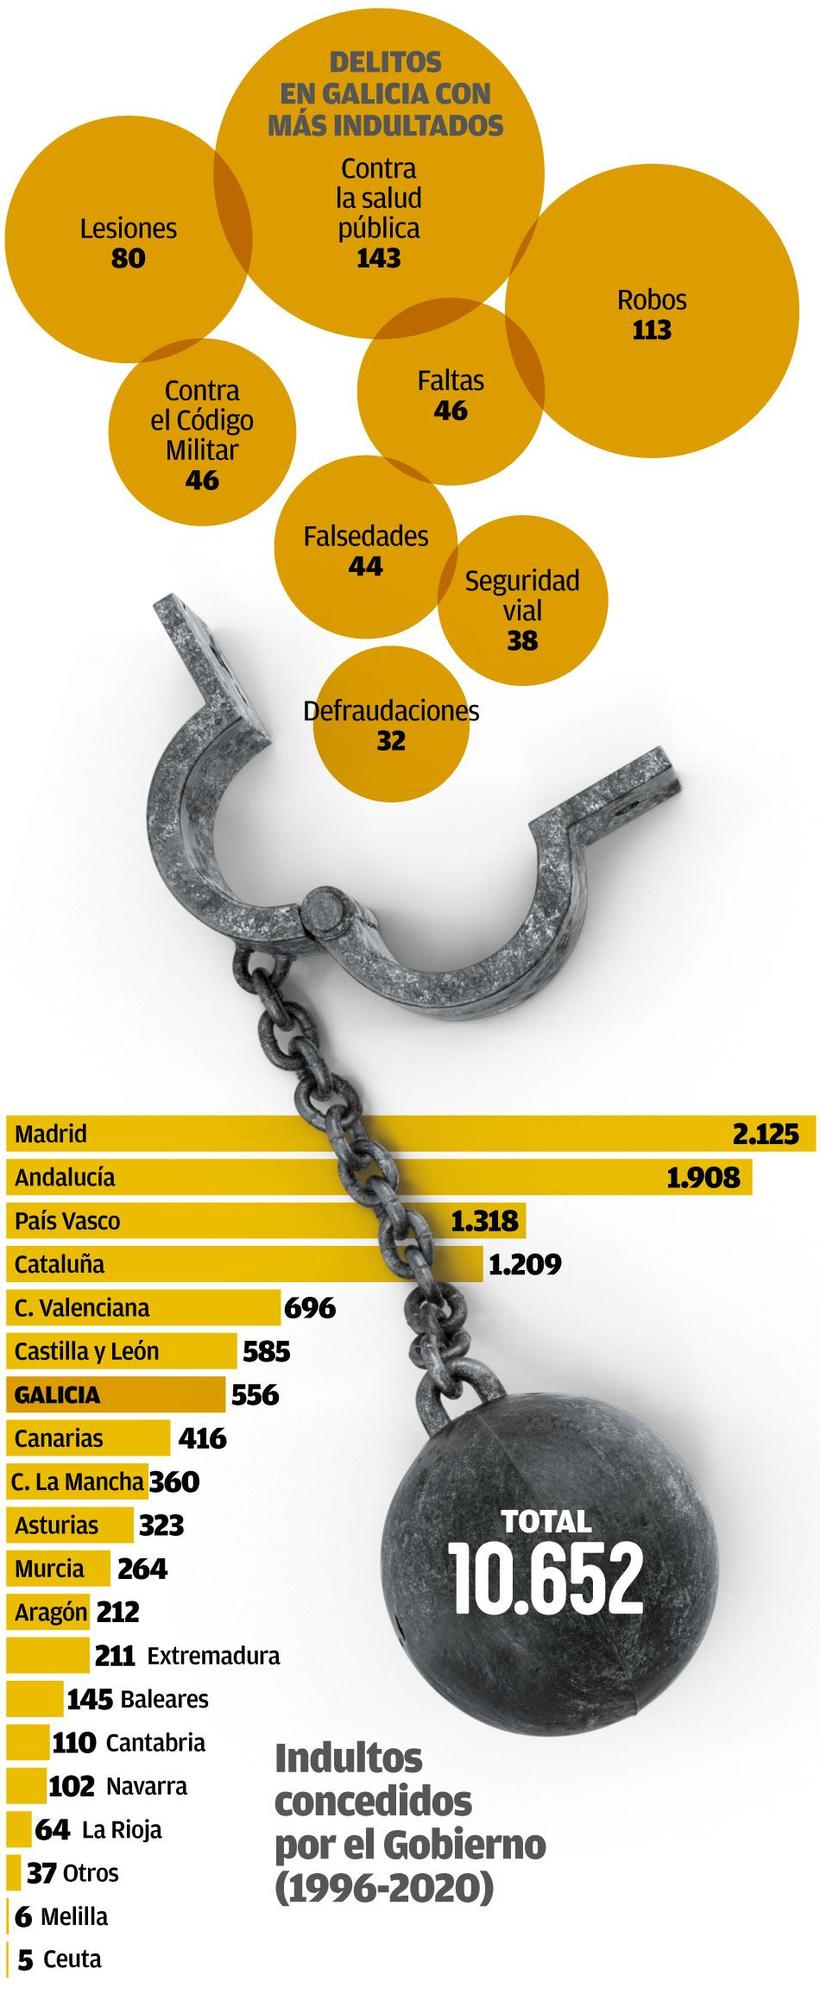 Los condenados que fueron indultados en Galicia en la última década